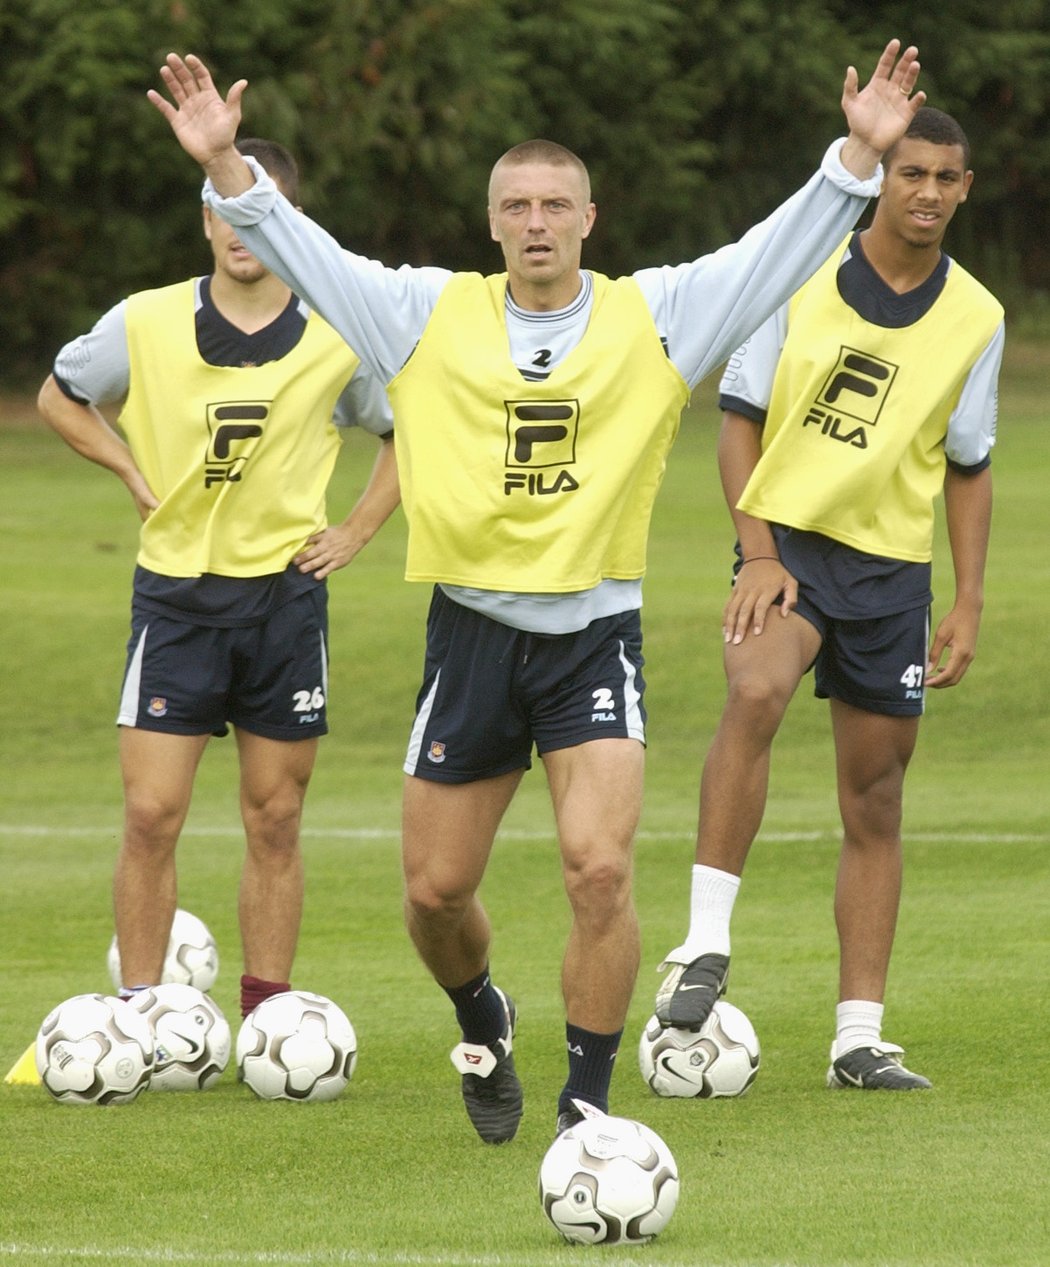 Deník Sport v roce 2002 navštívil Tomáše Řepku v době, kdy působil jako obránce West Hamu